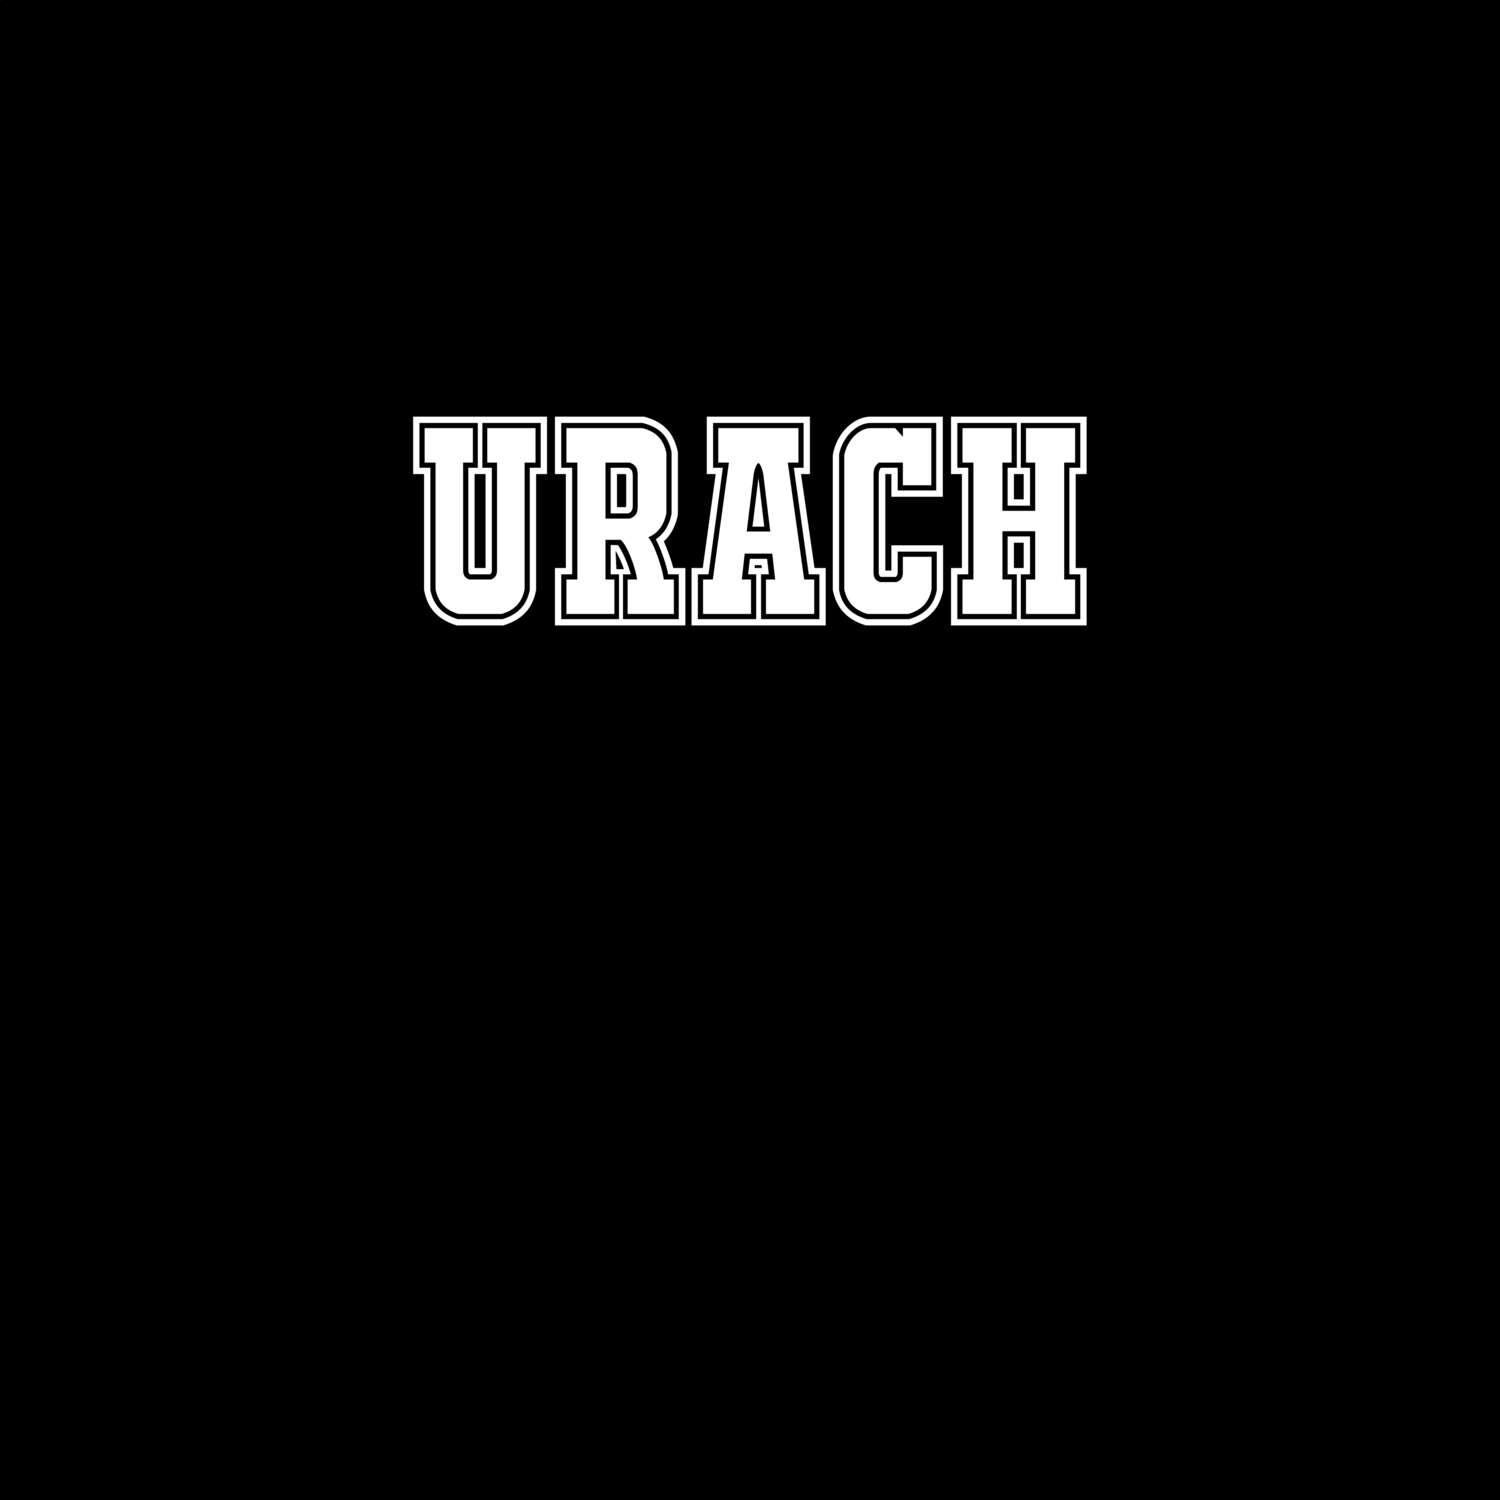 Urach T-Shirt »Classic«